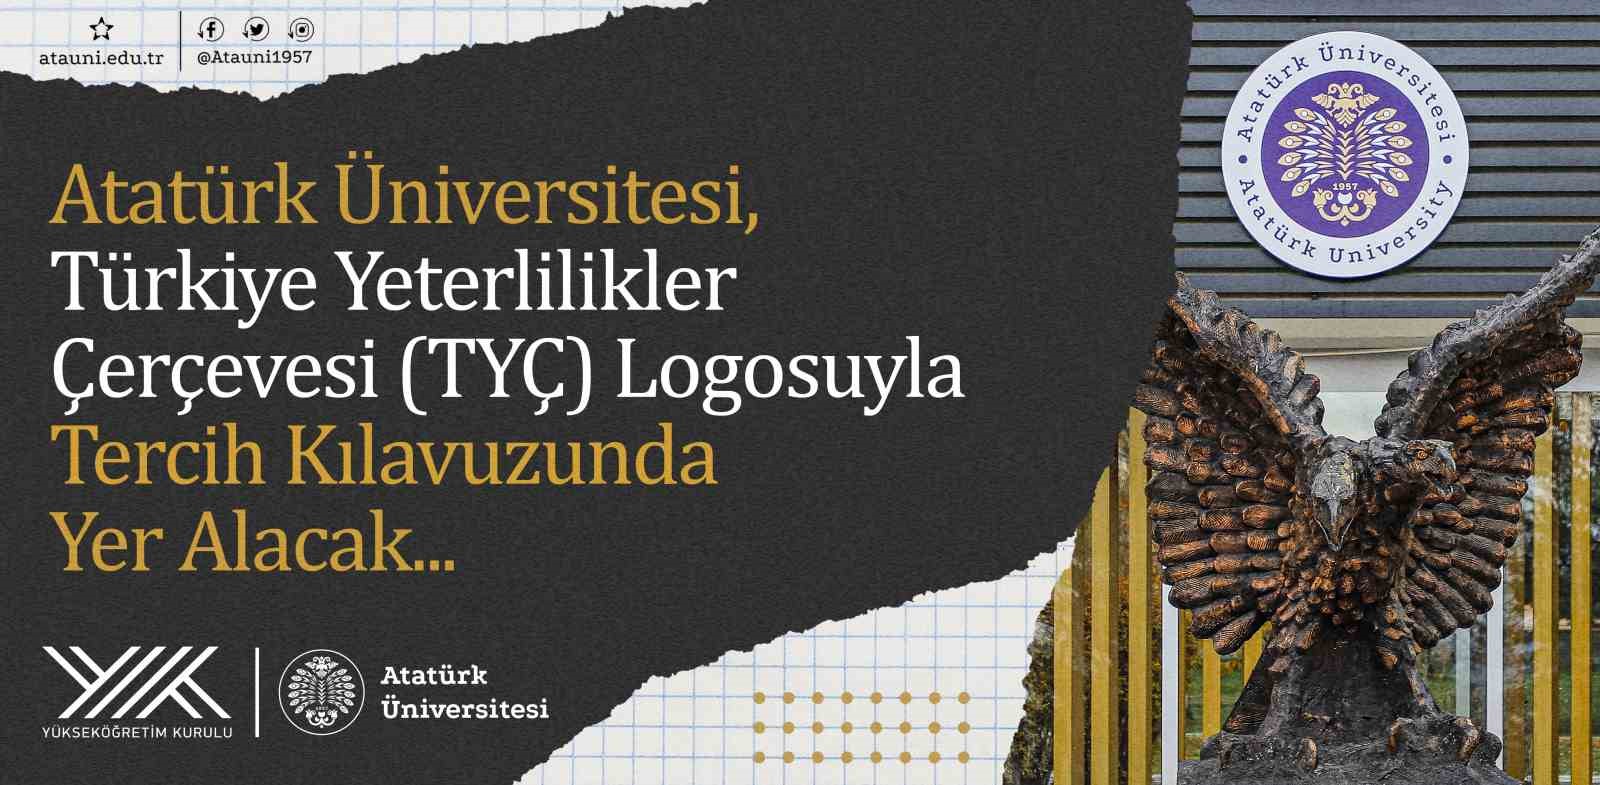 Atatürk Üniversitesi, Türkiye yeterlilikler çerçevesi logosuyla tercih kılavuzunda yer alacak
